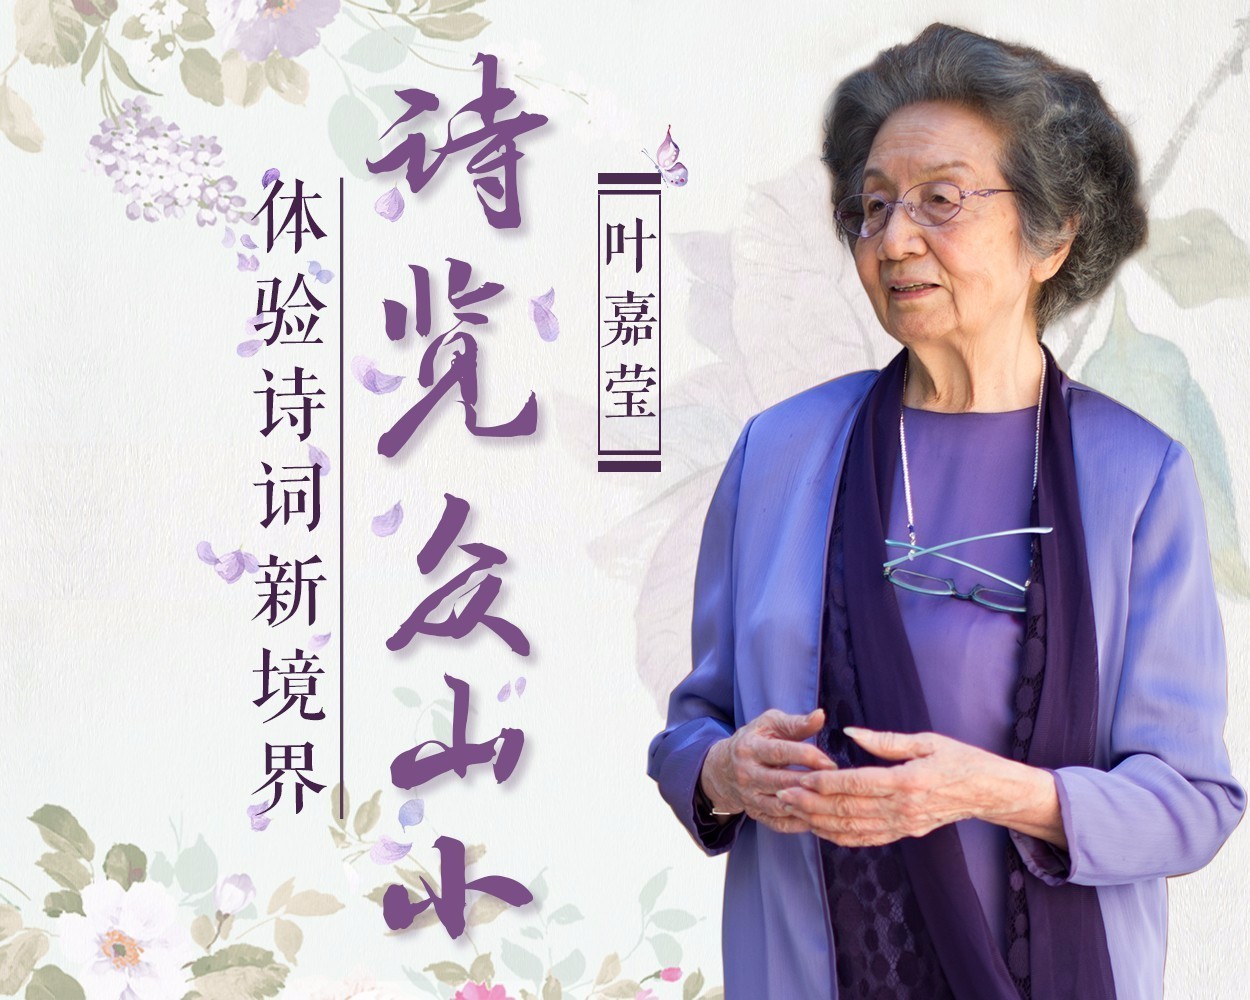 93岁叶嘉莹,才华不输杨绛,诗歌让她成为最美丽的先生